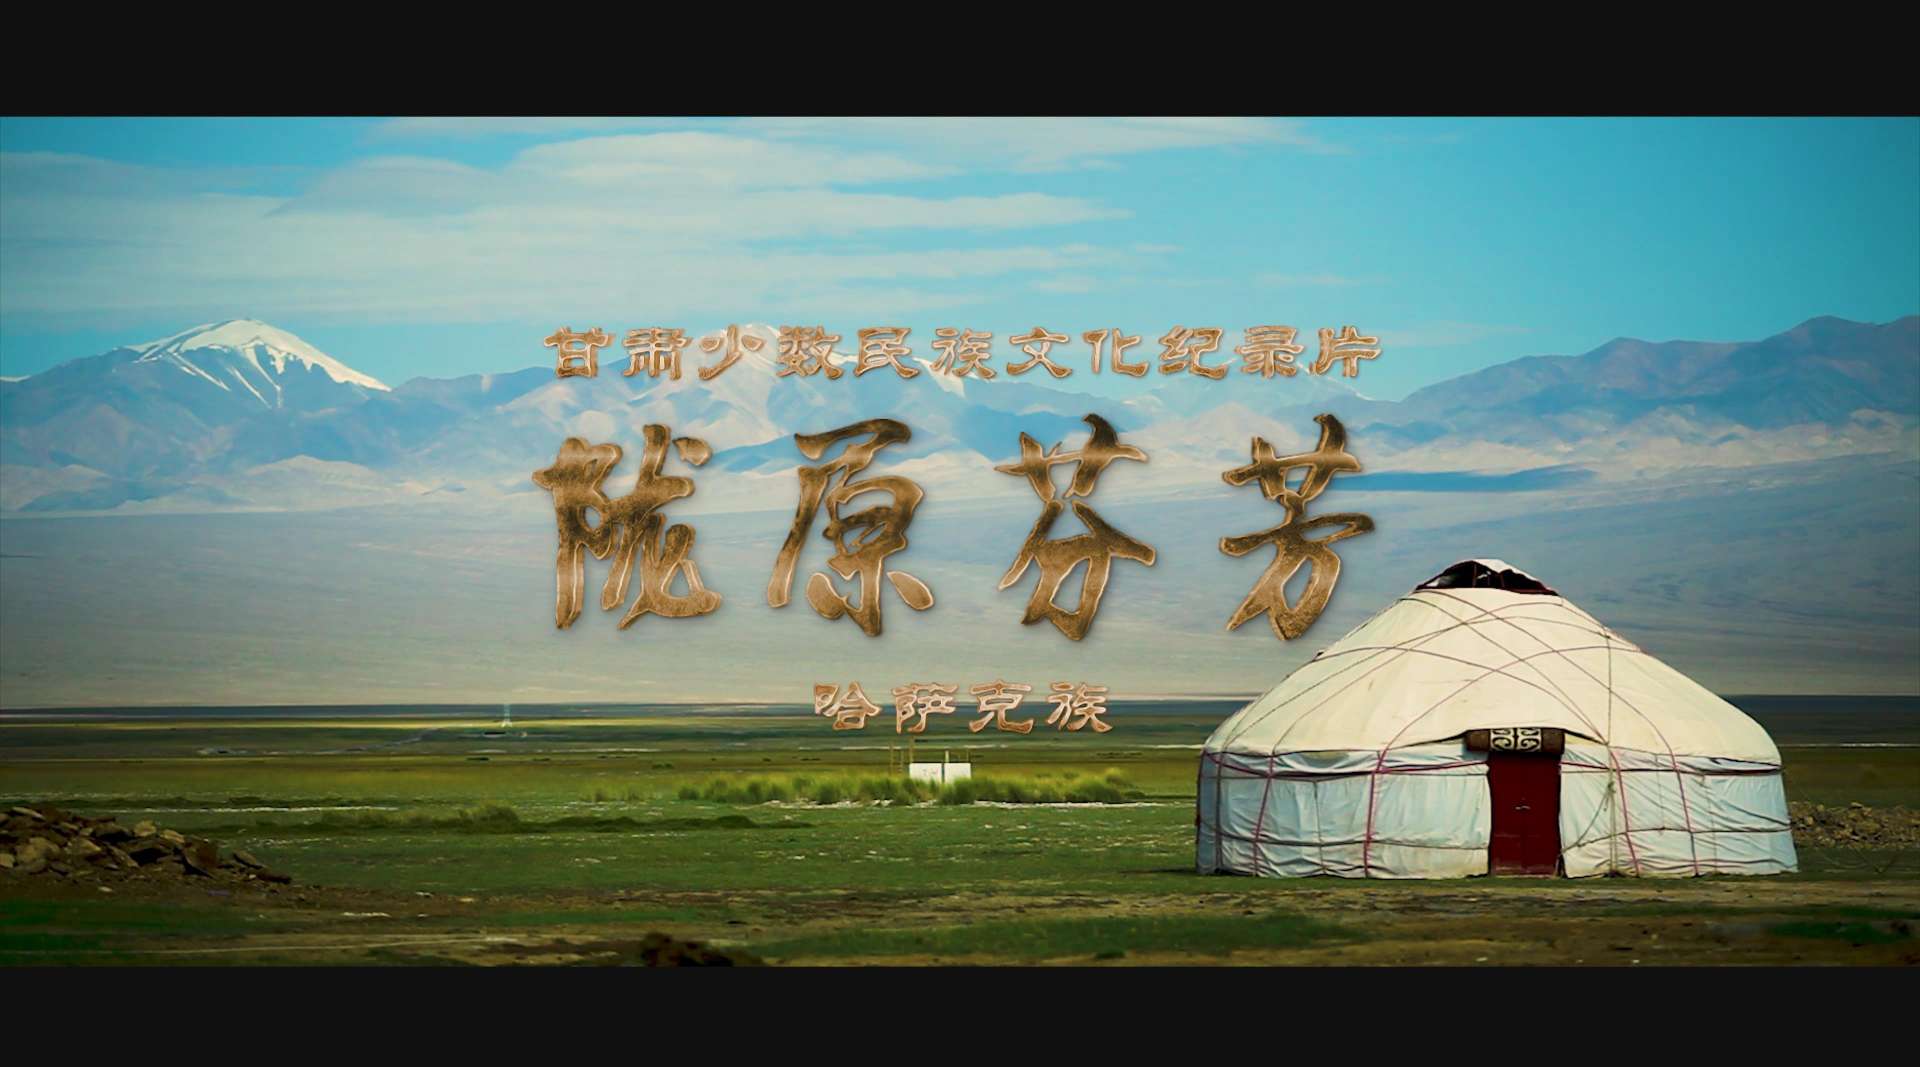 《陇原芬芳》甘肃少数民族文化纪录片 哈萨克族篇